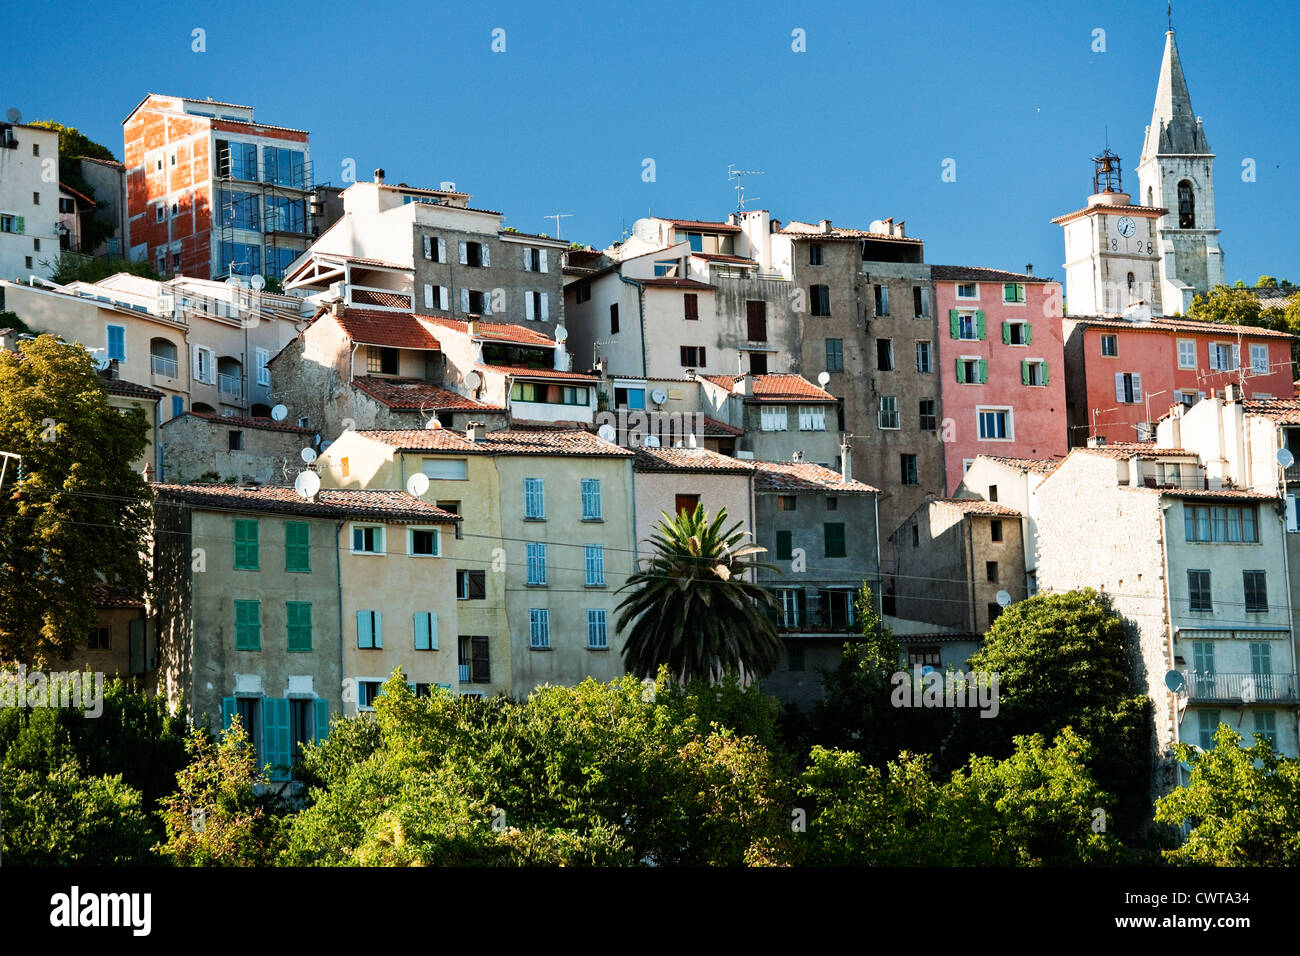 Une vue sur le pittoresque village de Callas, une commune française, située dans le département du Var et la région Provence-Alpes-Côte d'Azur en France Banque D'Images